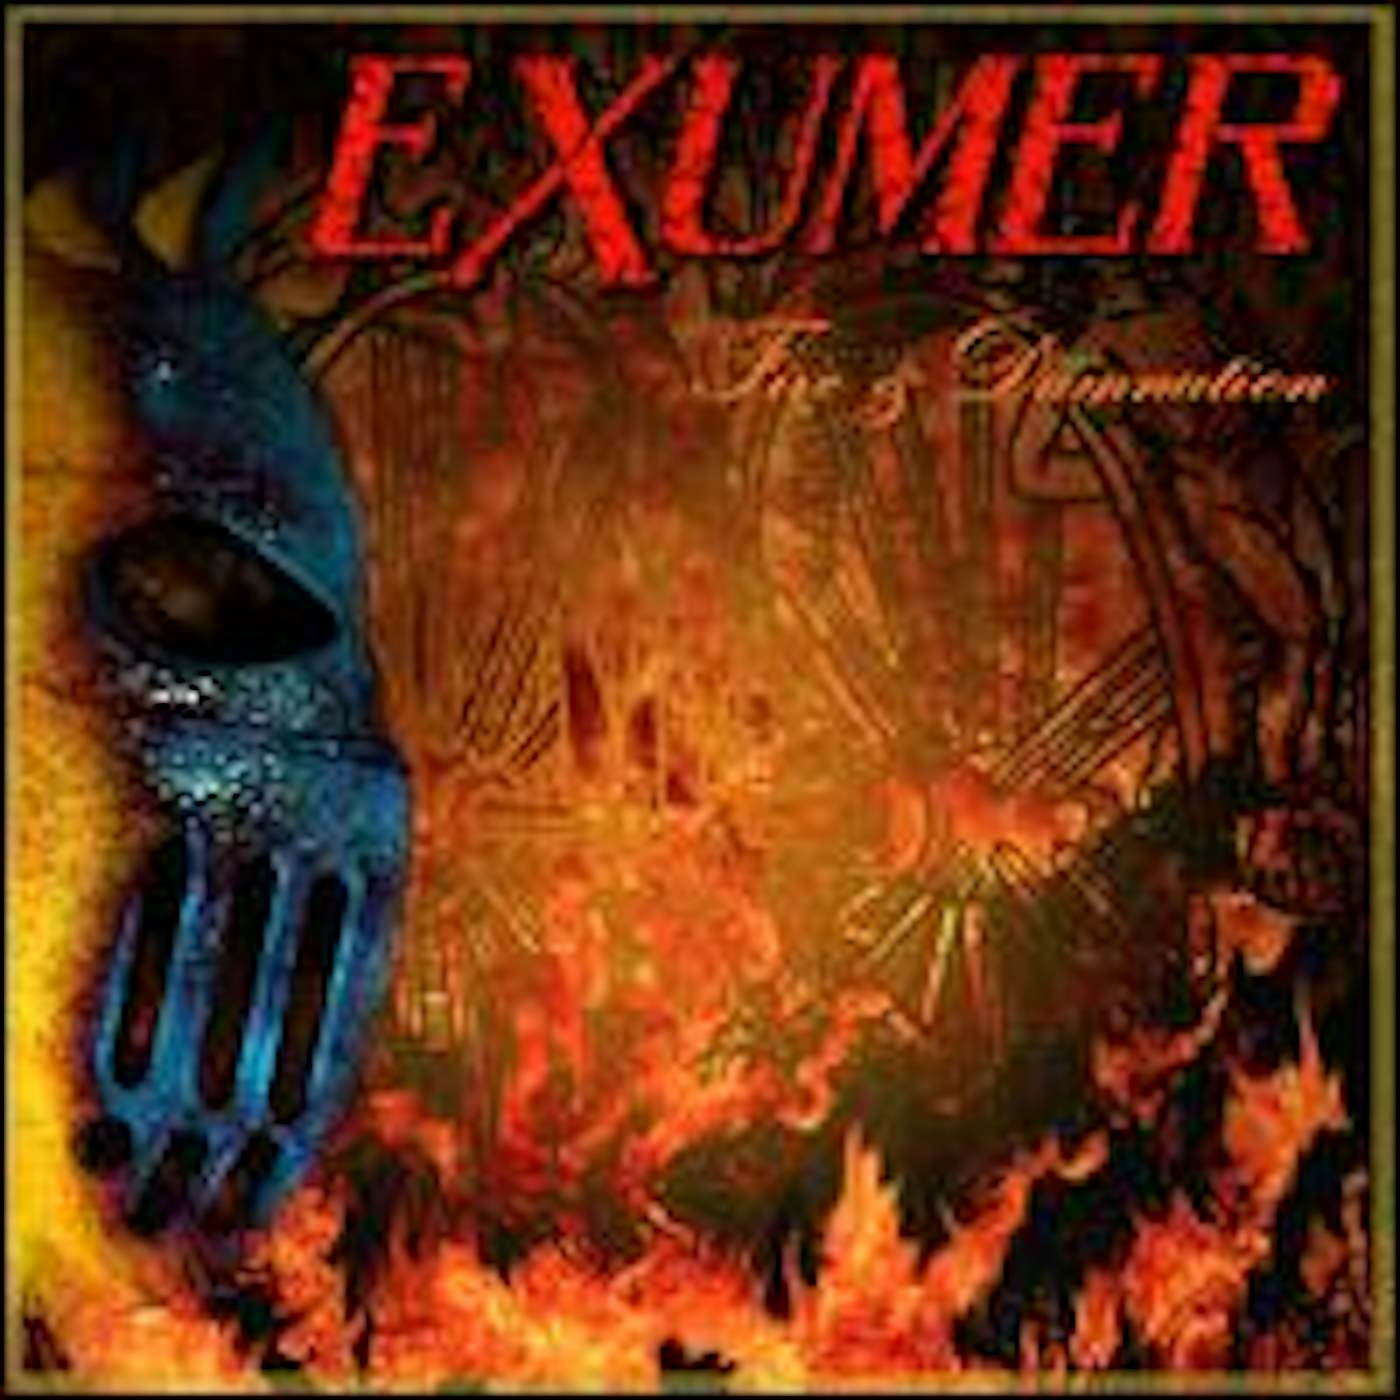 Exumer FIRE & DAMNATION Vinyl Record - UK Release